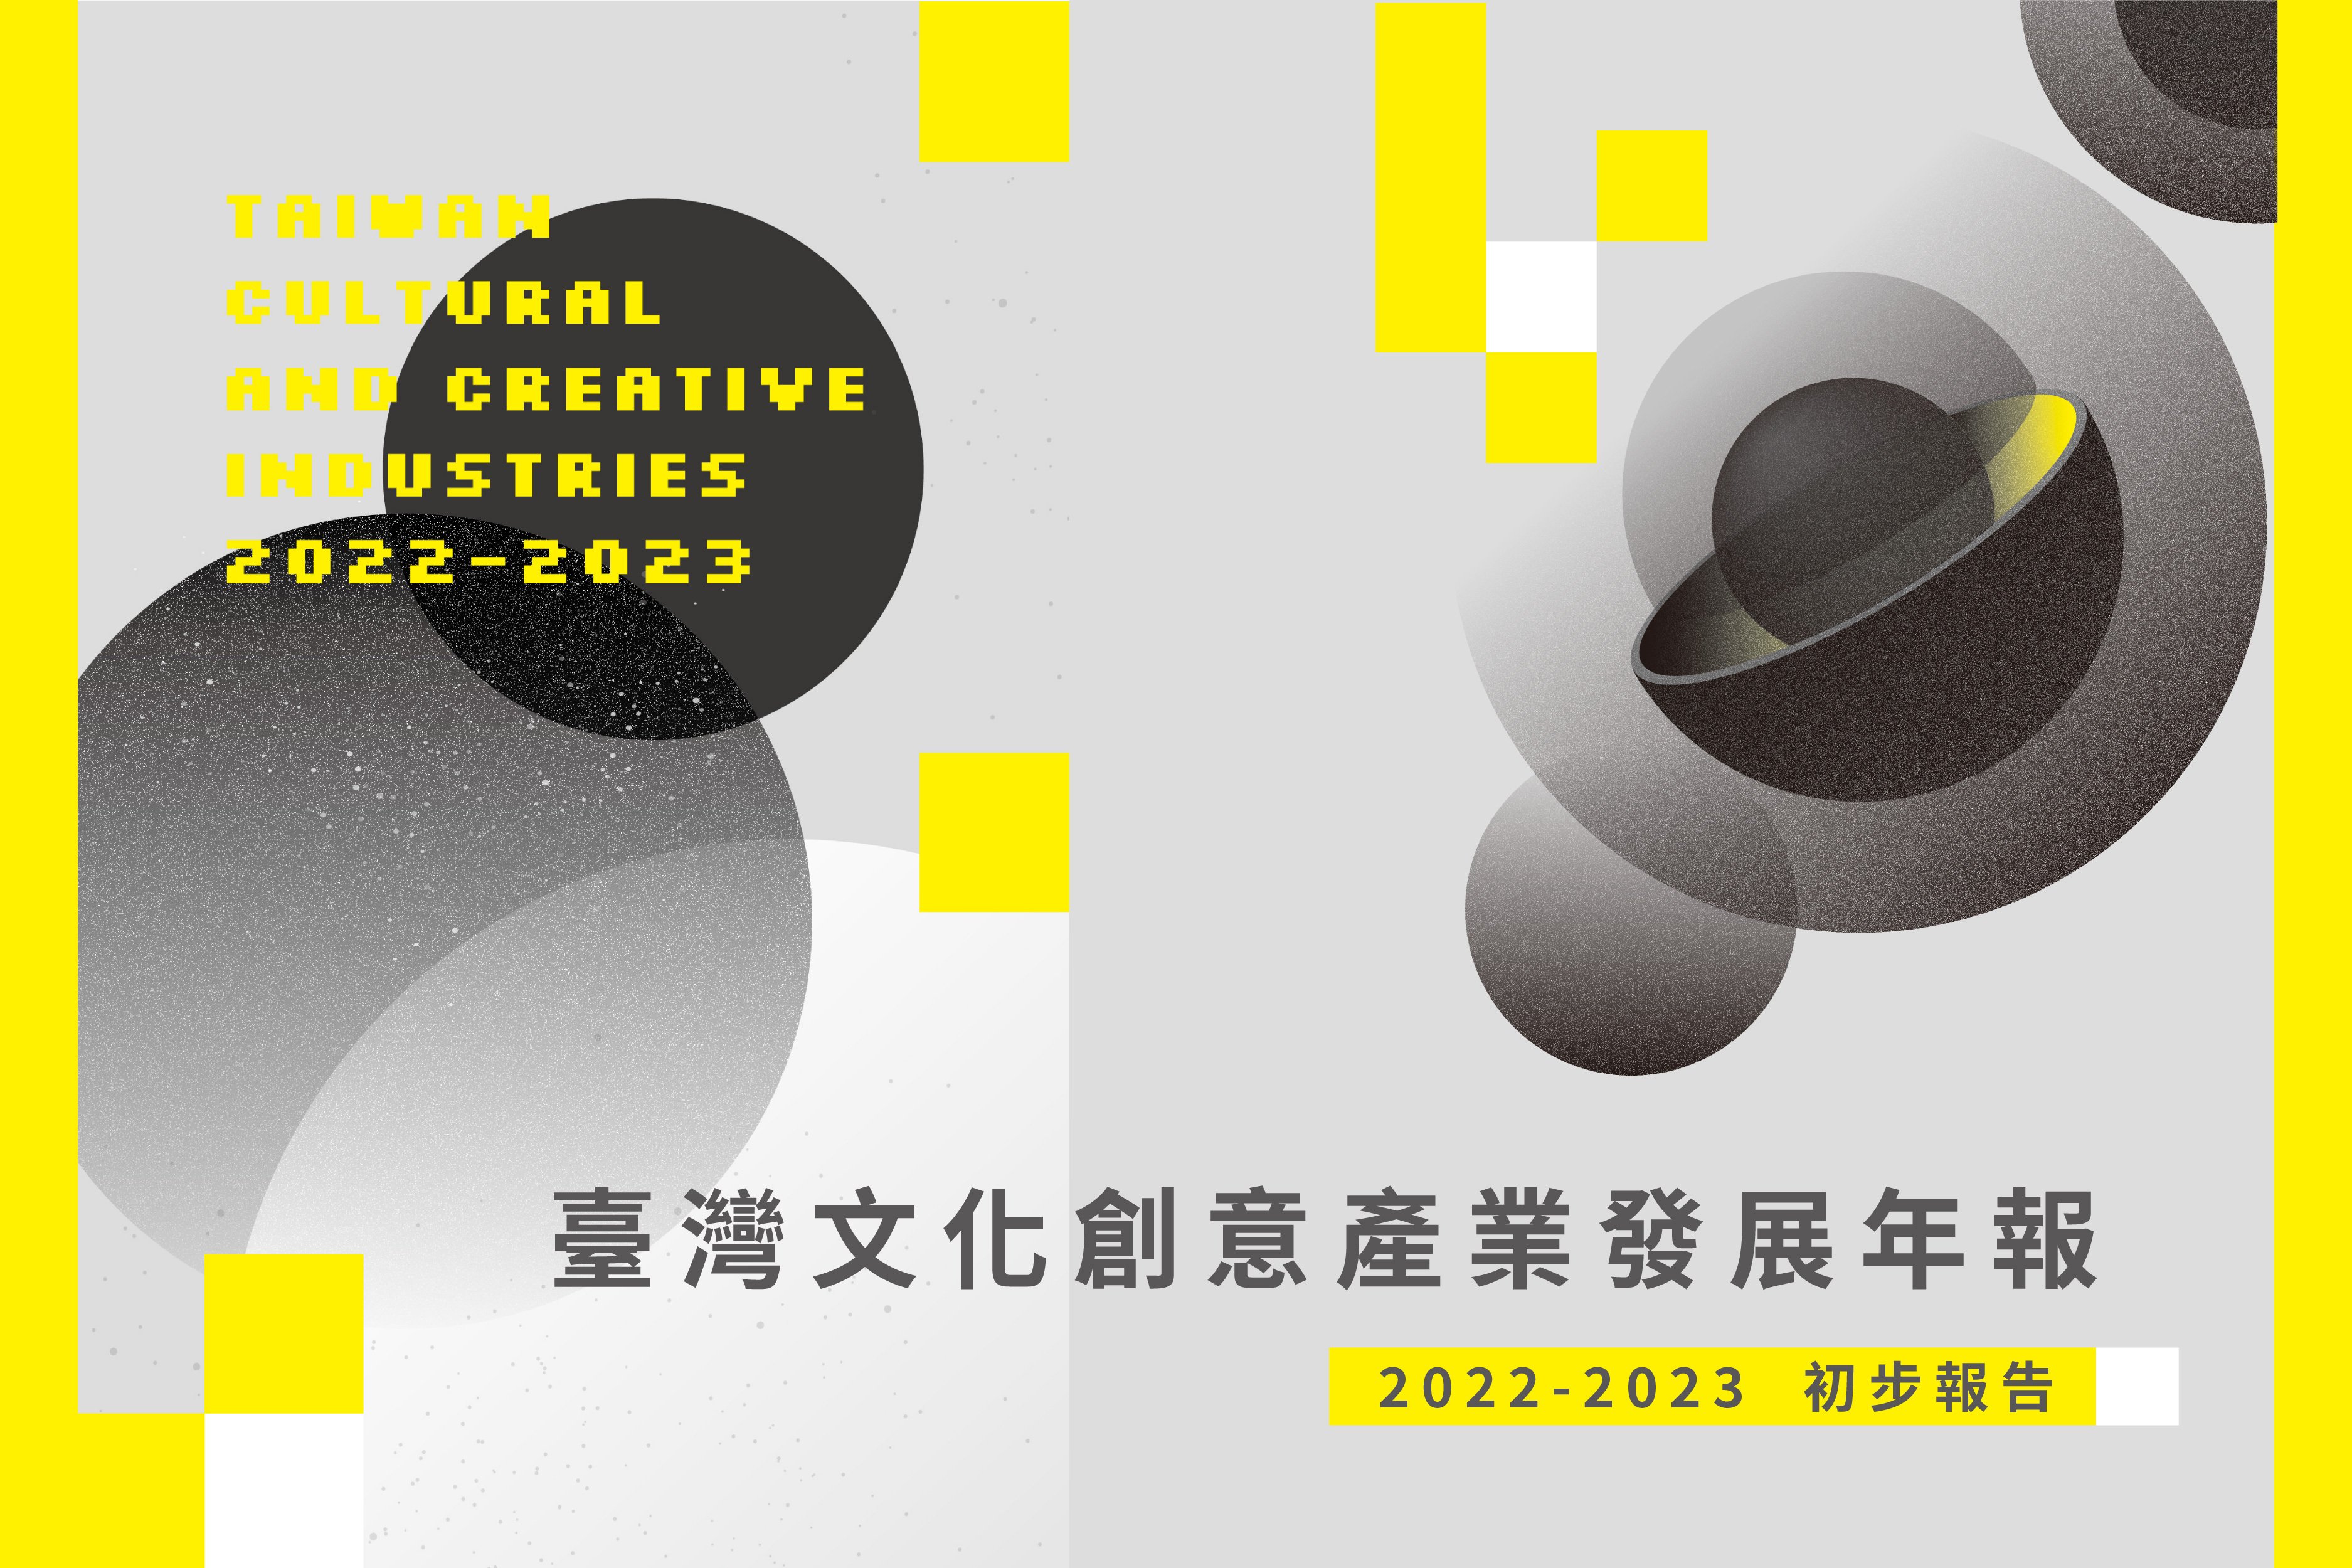 《2022-2023臺灣文化創意產業發展年報》初步報告